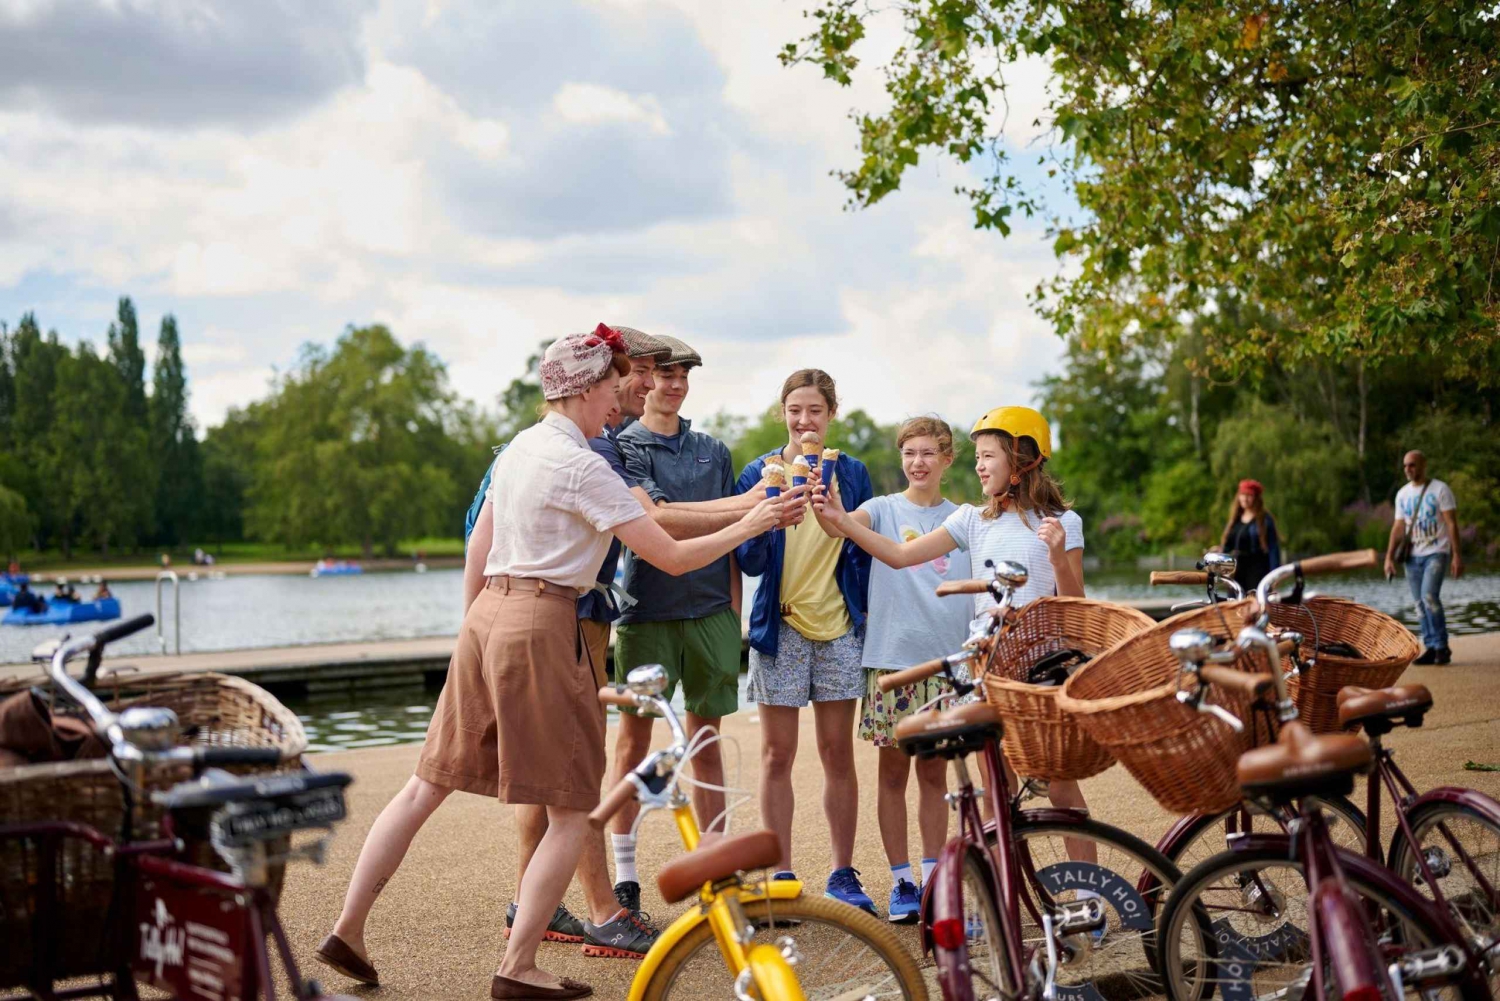 Londen: Familie fietstour met kinderzitjes